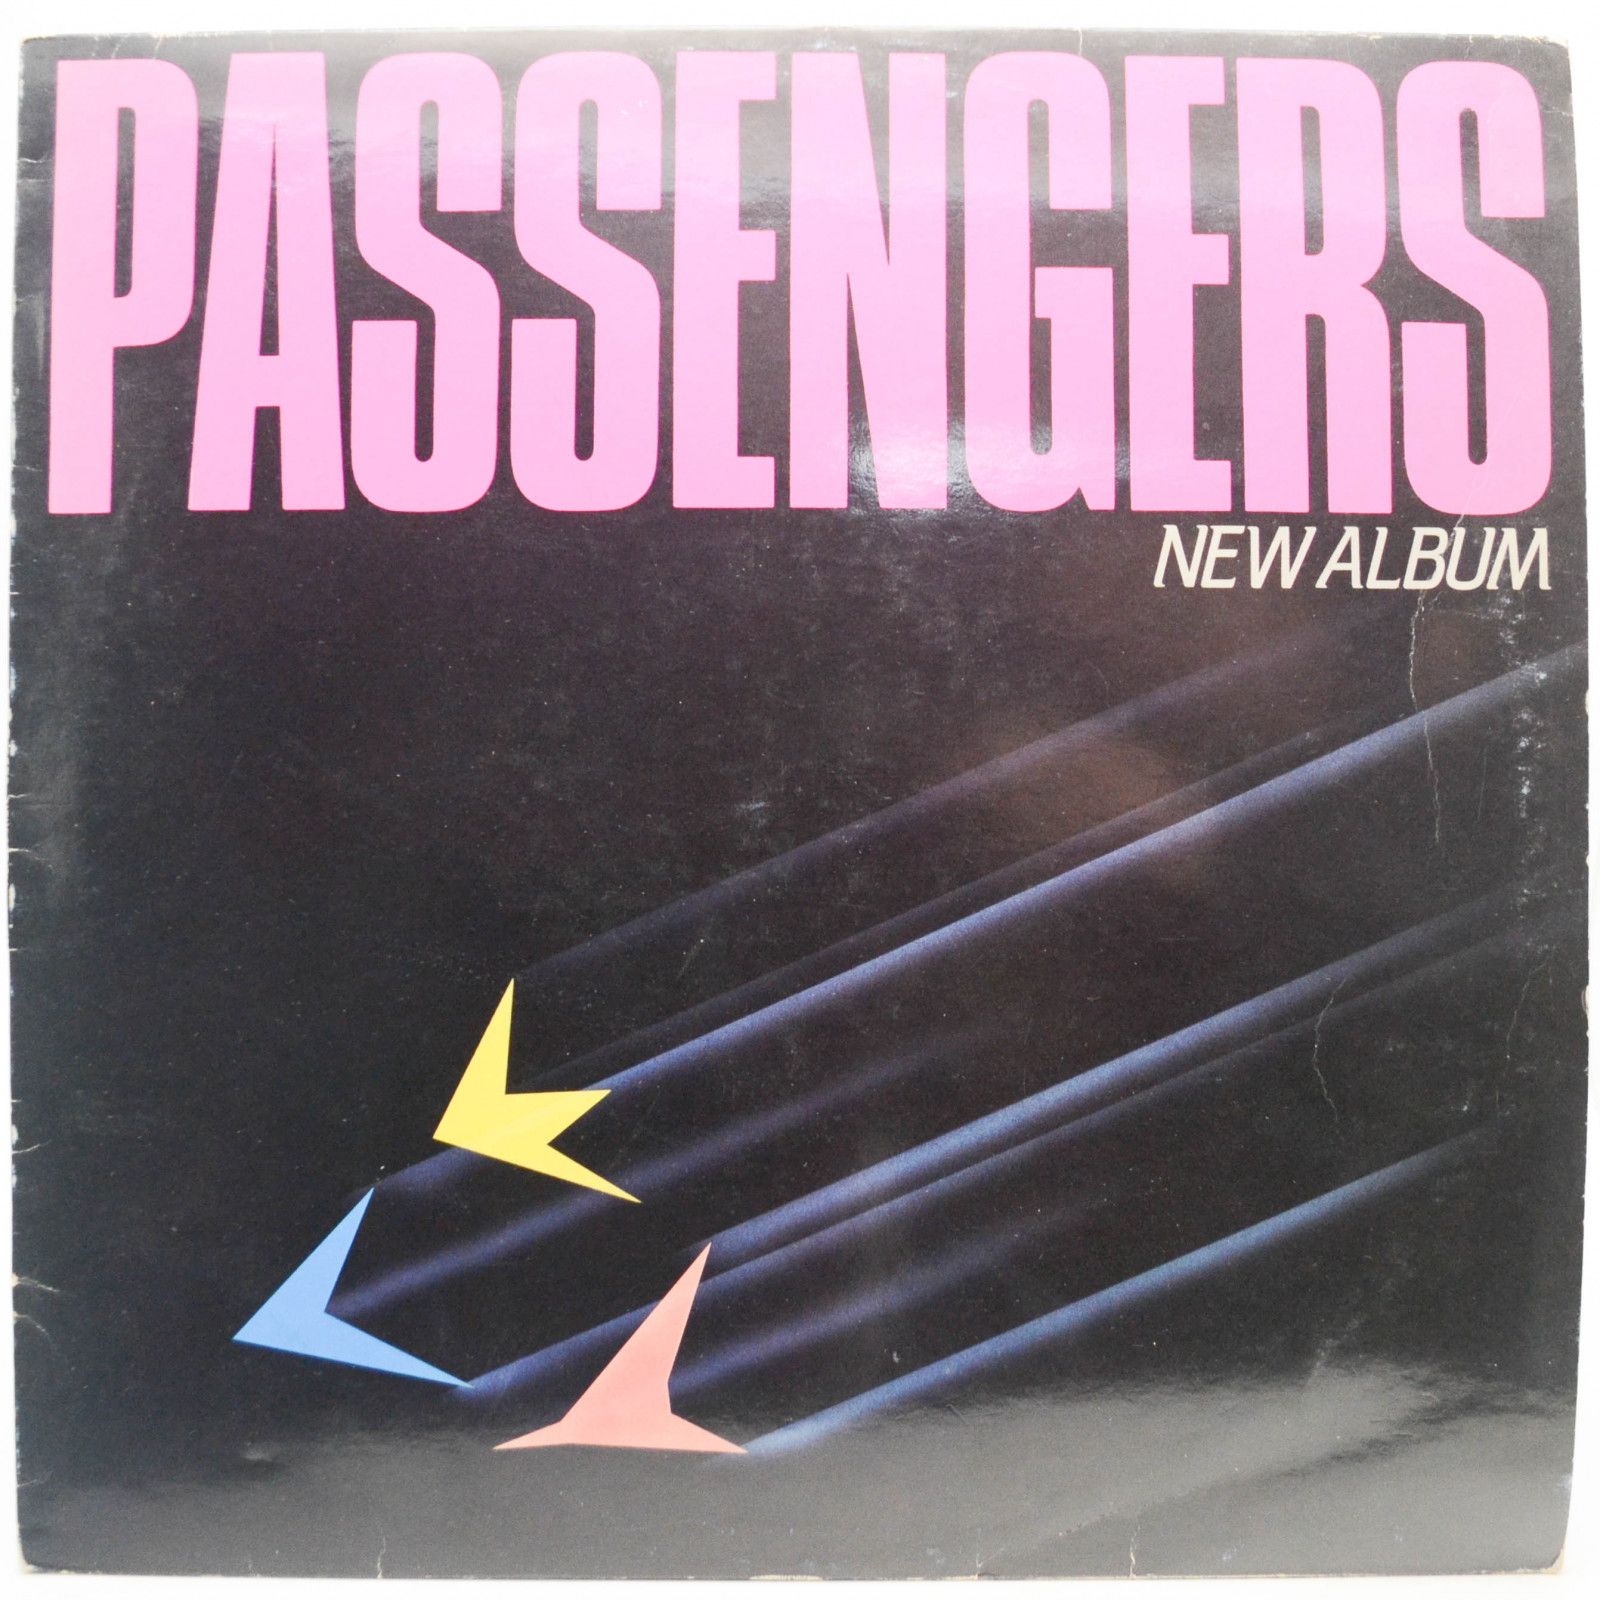 Passengers — New Album (Автограф, Italy), 1985